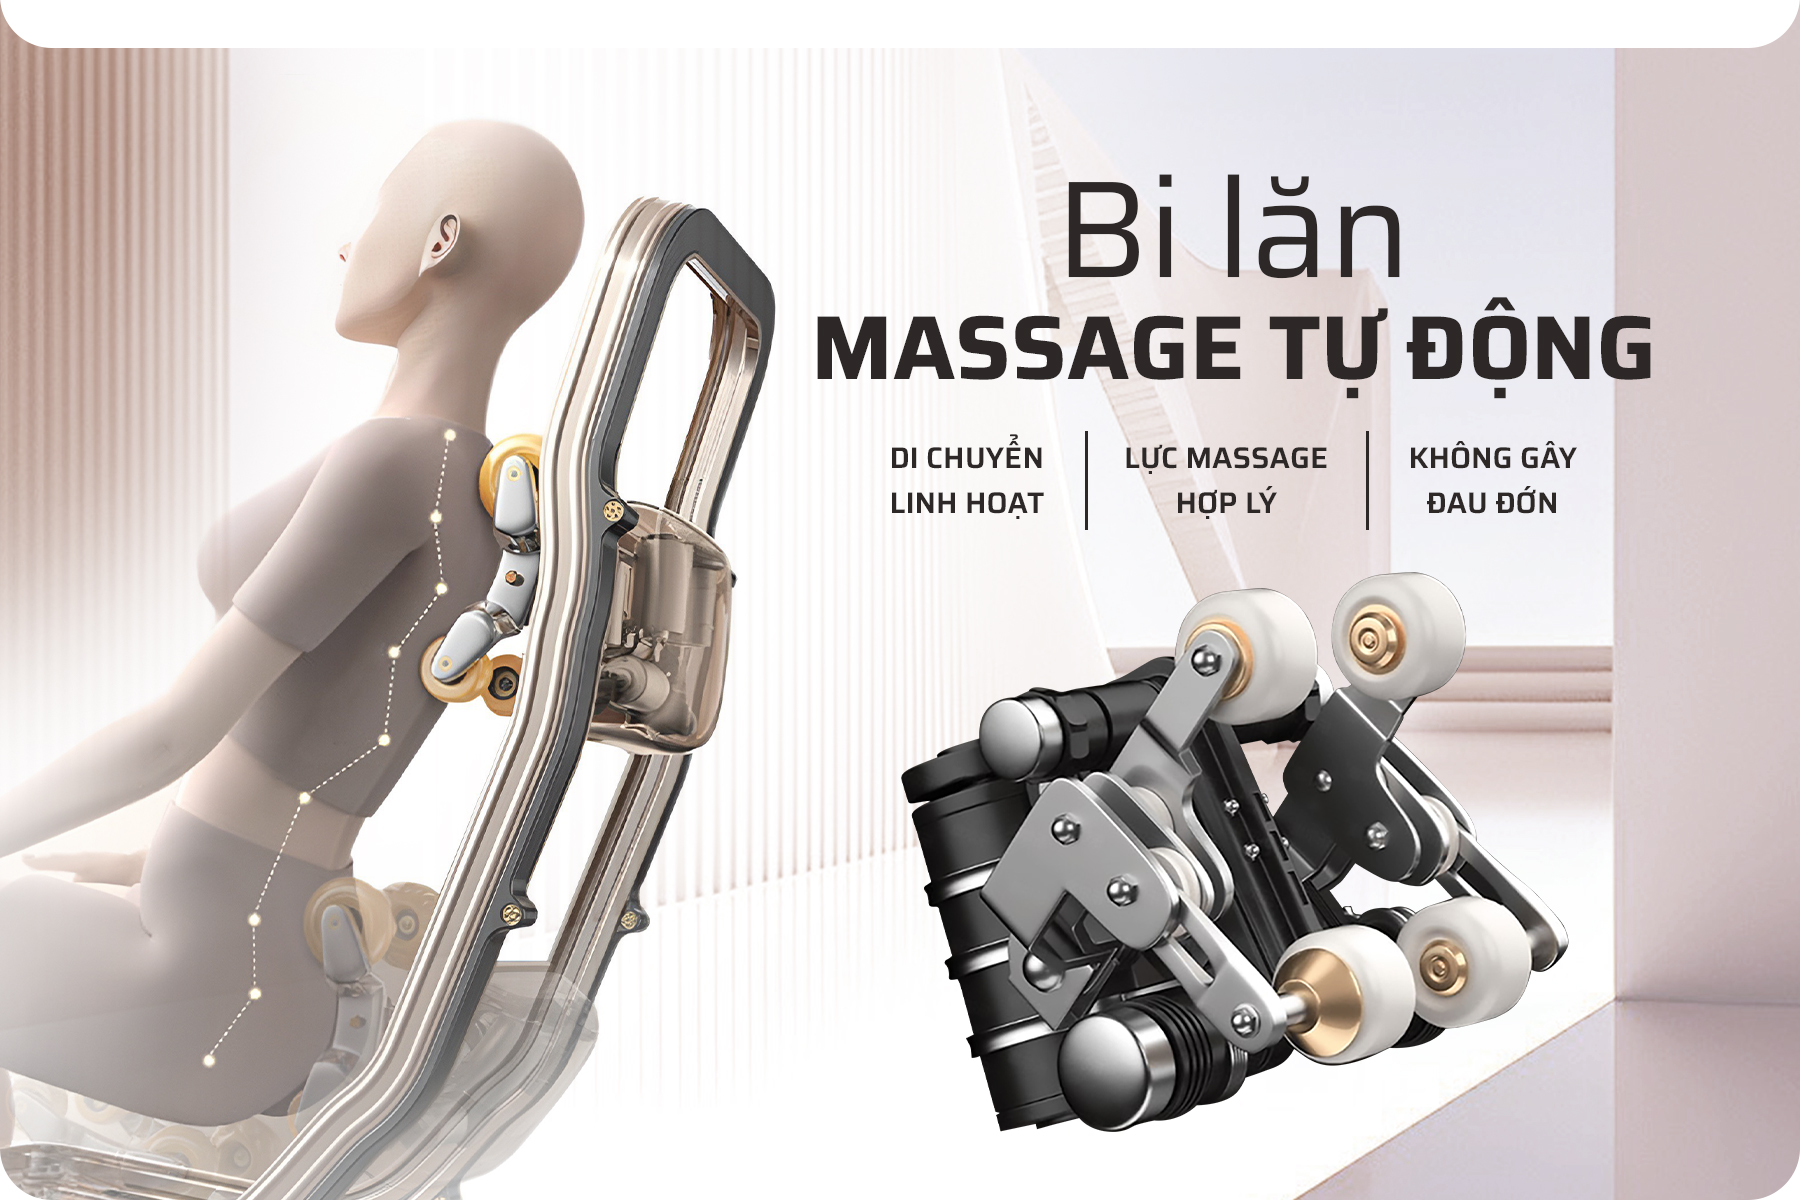 Ghế massage FJ7799 sở hữu công nghệ bi lăn cao cấp 